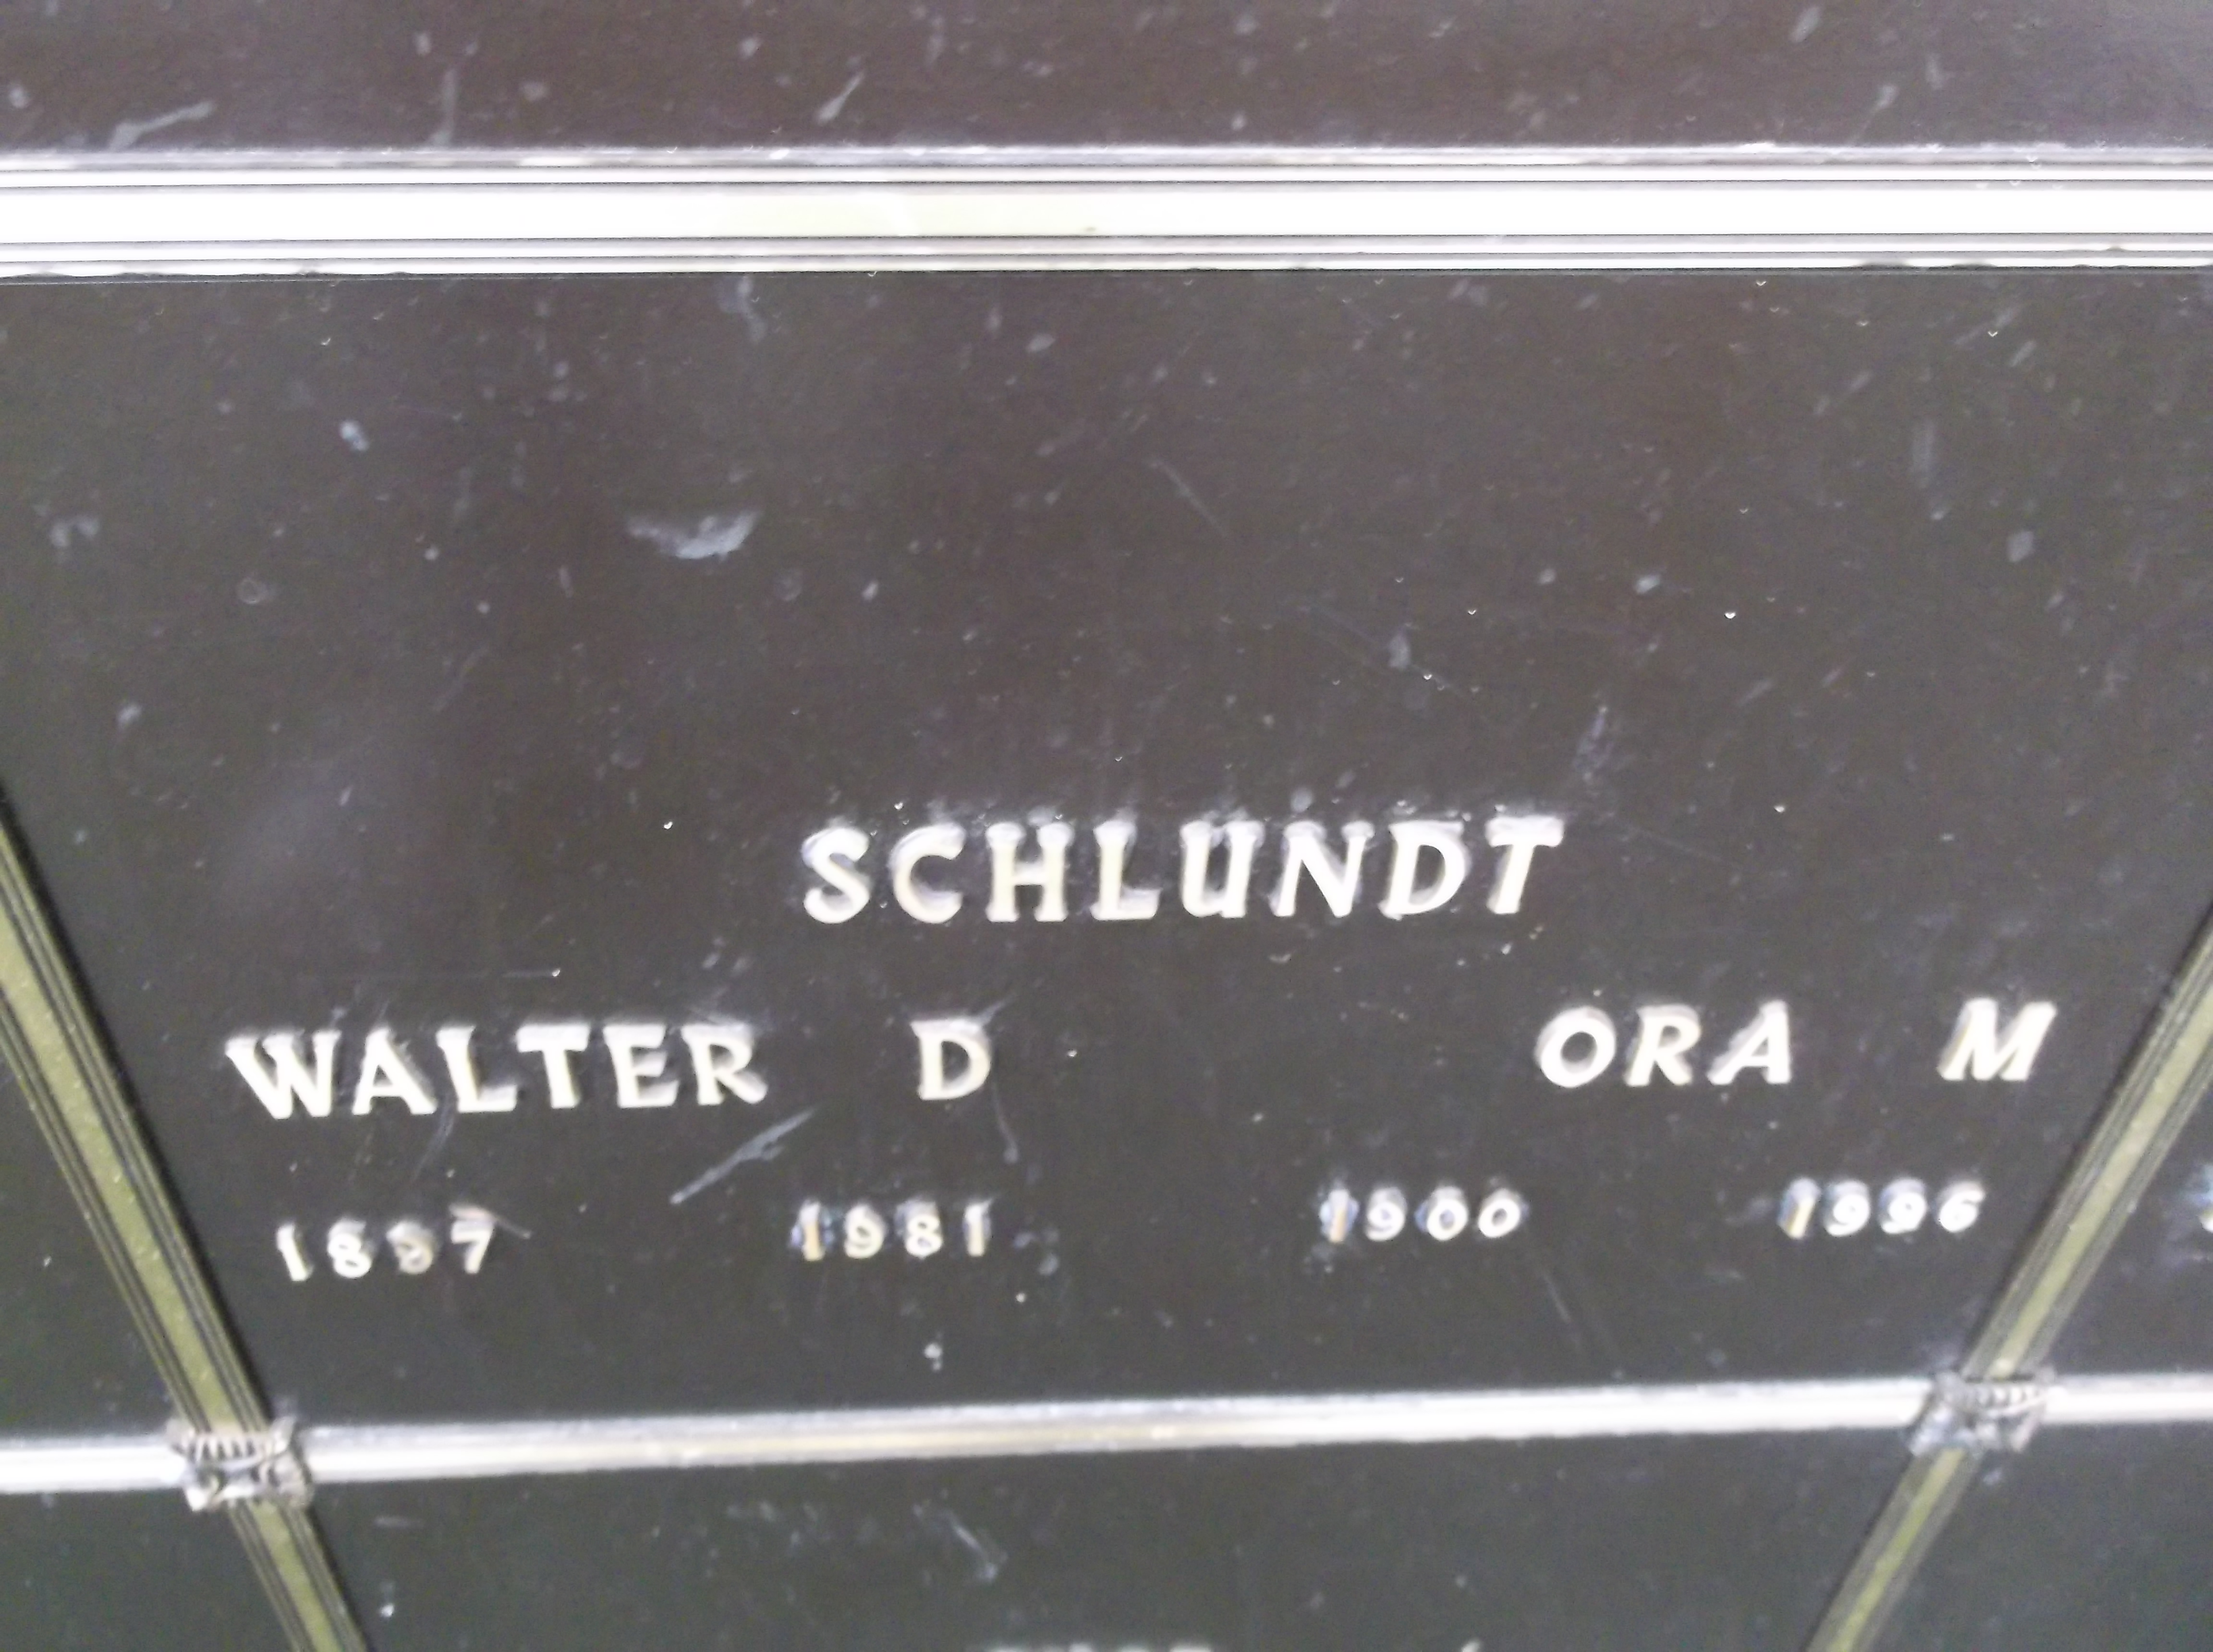 Walter D Schlundt